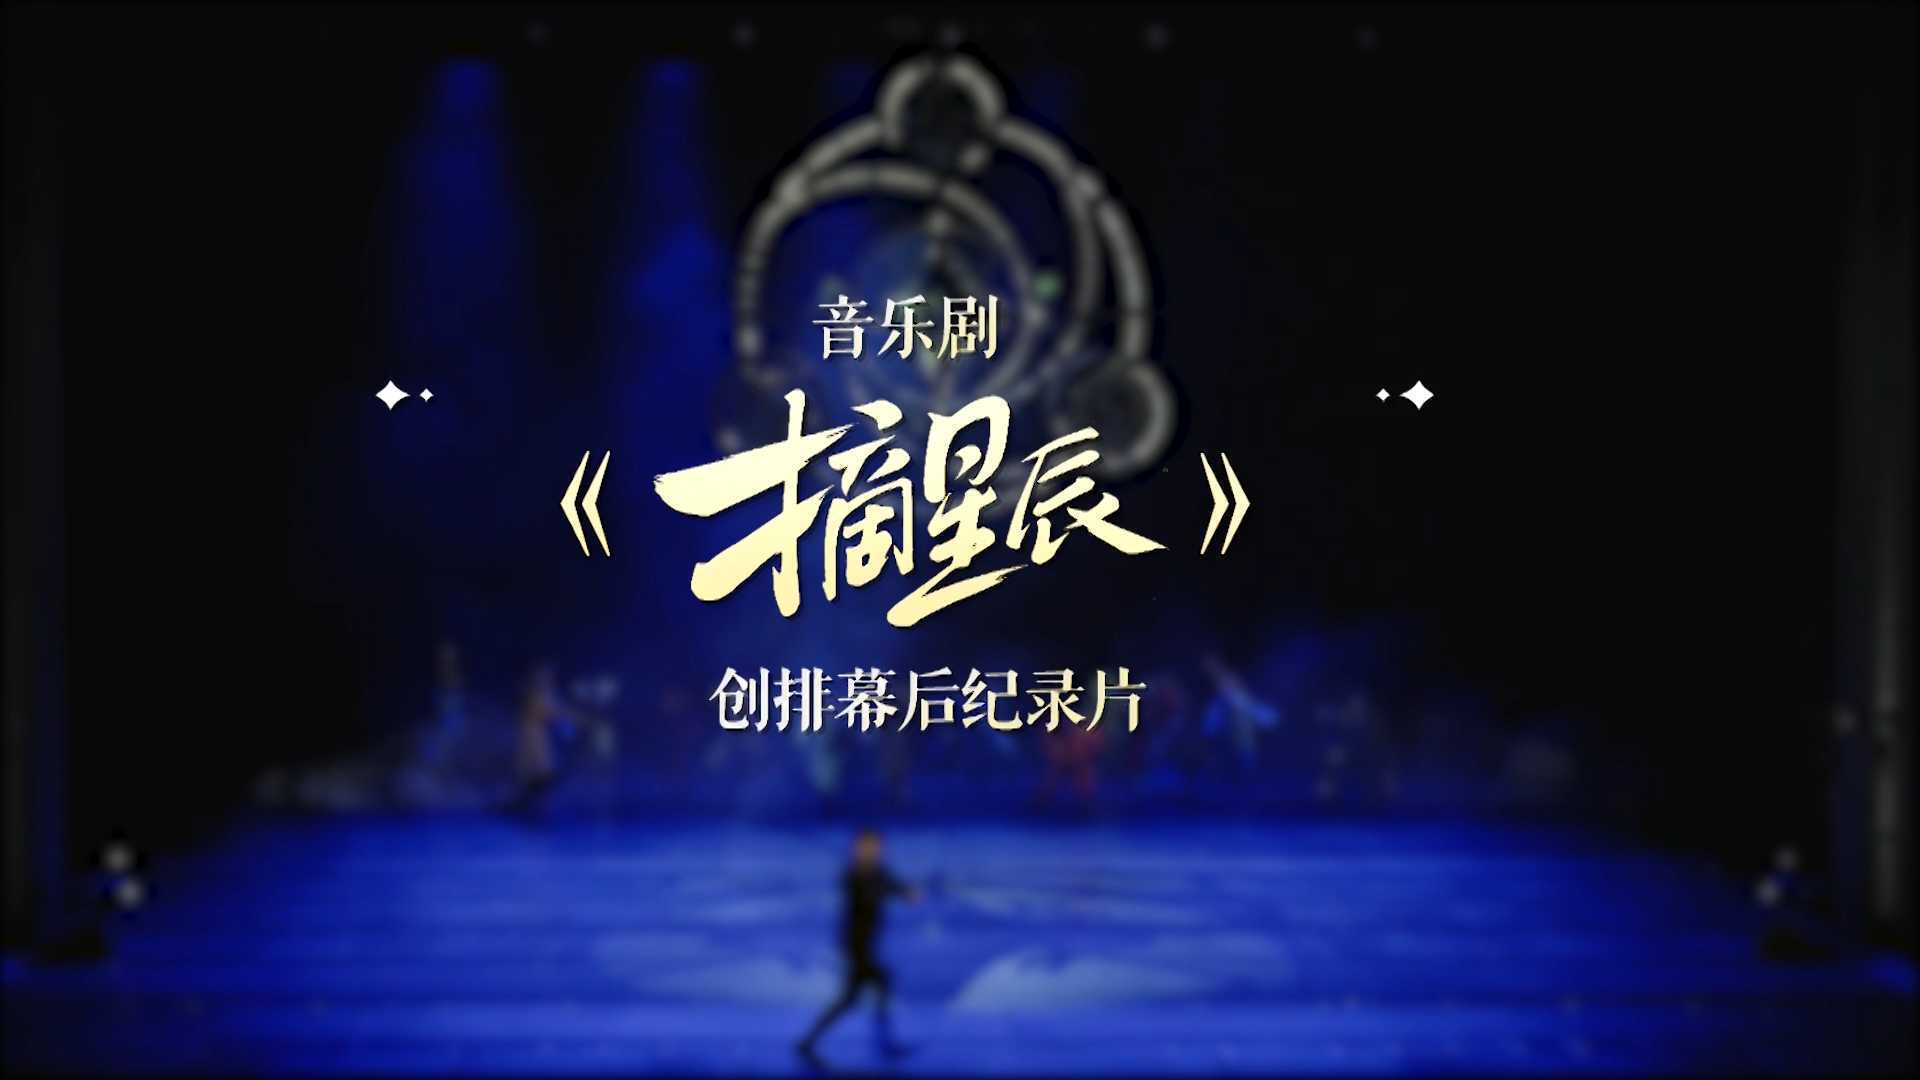 王者荣耀音乐剧《摘星辰》创排纪录片